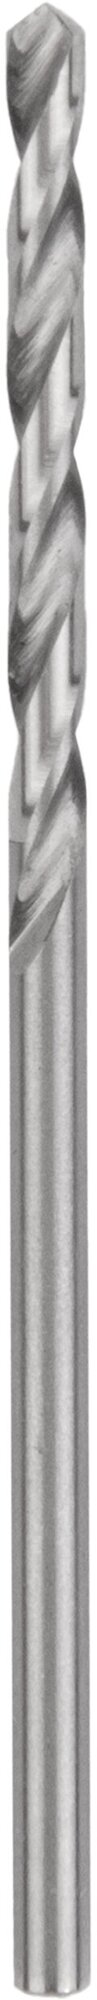 Сверло по металлу и чугуну 0,6 мм NORGAU Industrial из быстрорежущей HSS стали, DIN 338